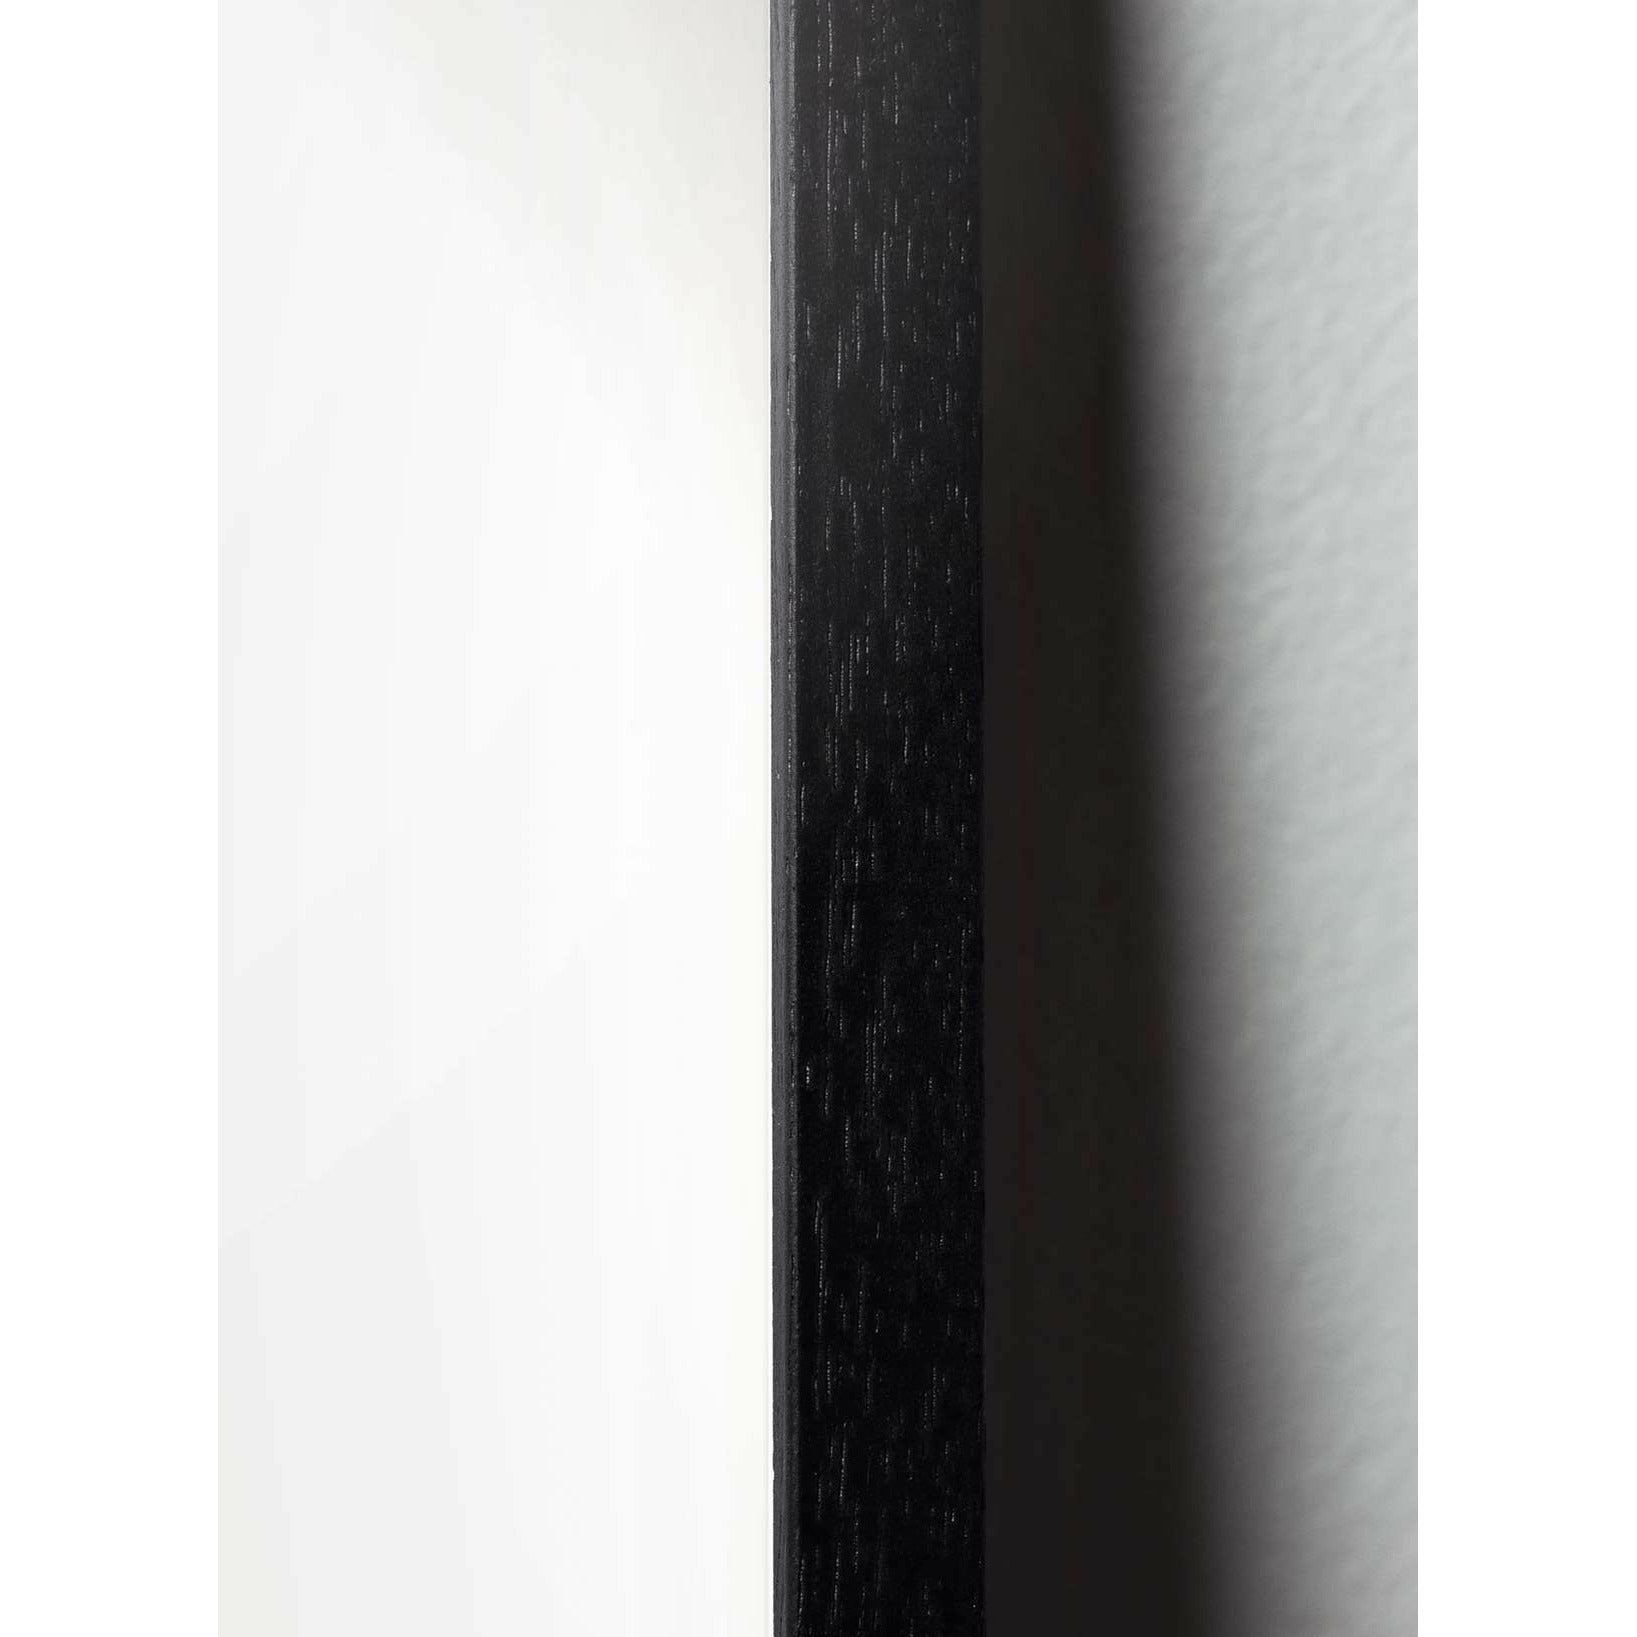 Poster de creación de Eierparade, marco hecho de madera lacada negra, 50x70 cm